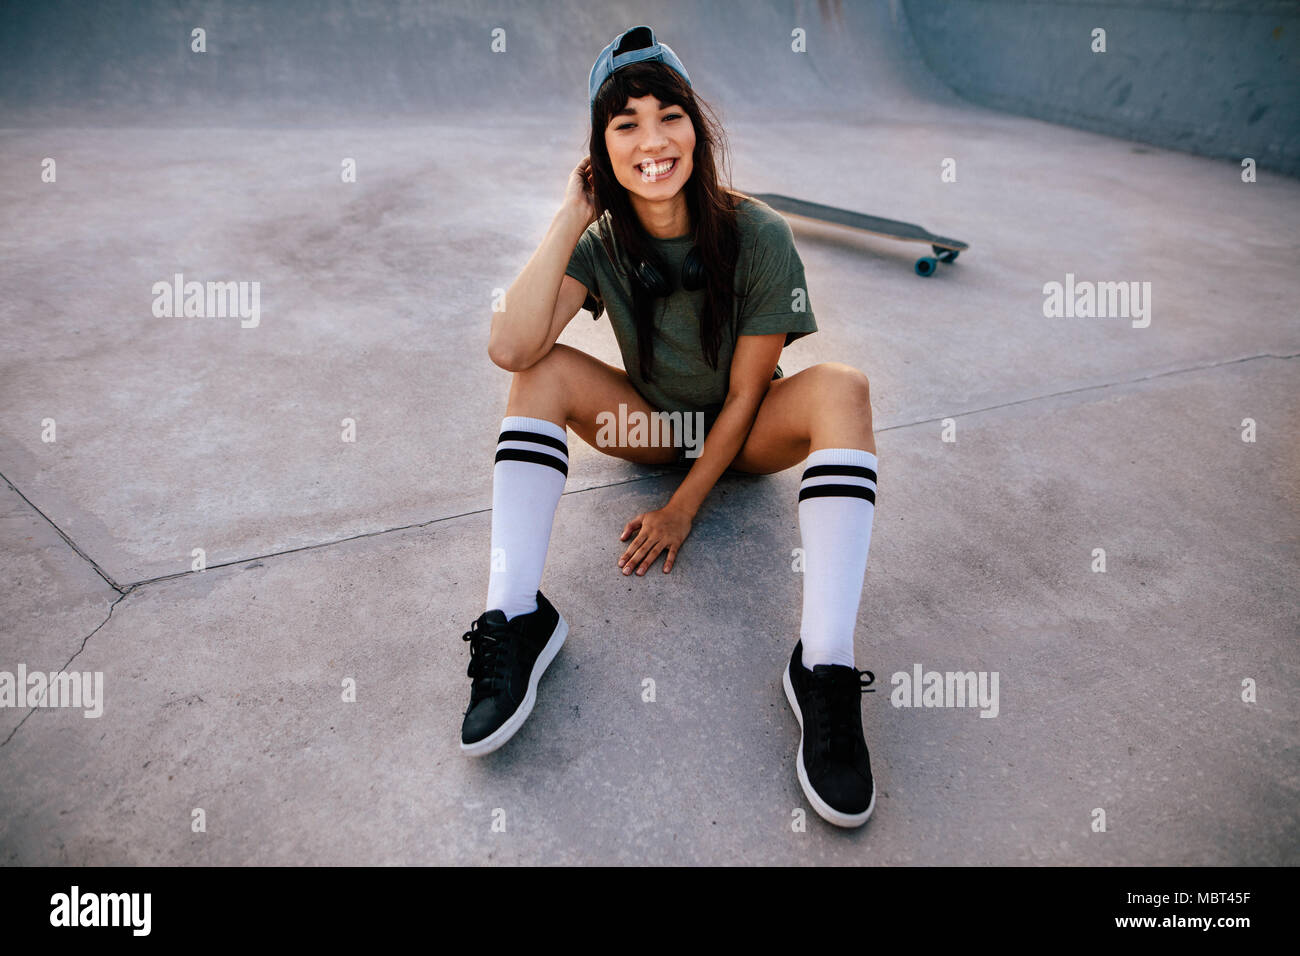 Retrato de cool joven skateboarder sentado en el parque de skate mirando a la cámara y sonriendo. Hipster mujer relajarse al aire libre en el parque de skate. Foto de stock